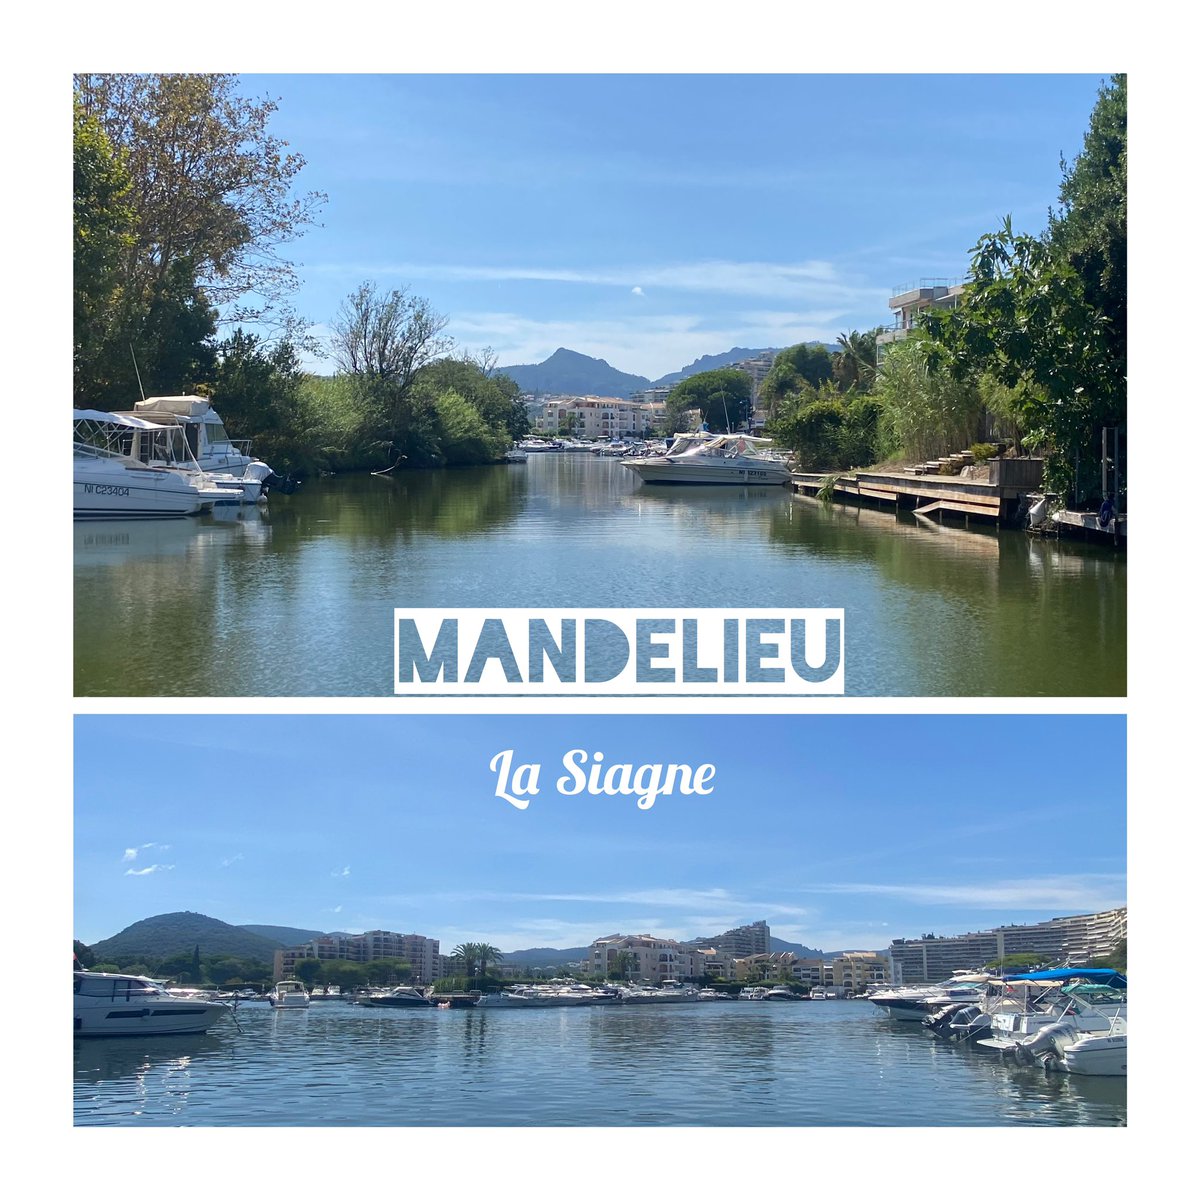 💡😎 sortie en mer précédée par une petite ballade en bateau sur la Siagne, environnement paisible entouré de verdure 🏝️#mandelieu #mandelieu_la_napoule #mandelieutourisme #mandelieu_tourisme #cotedazur